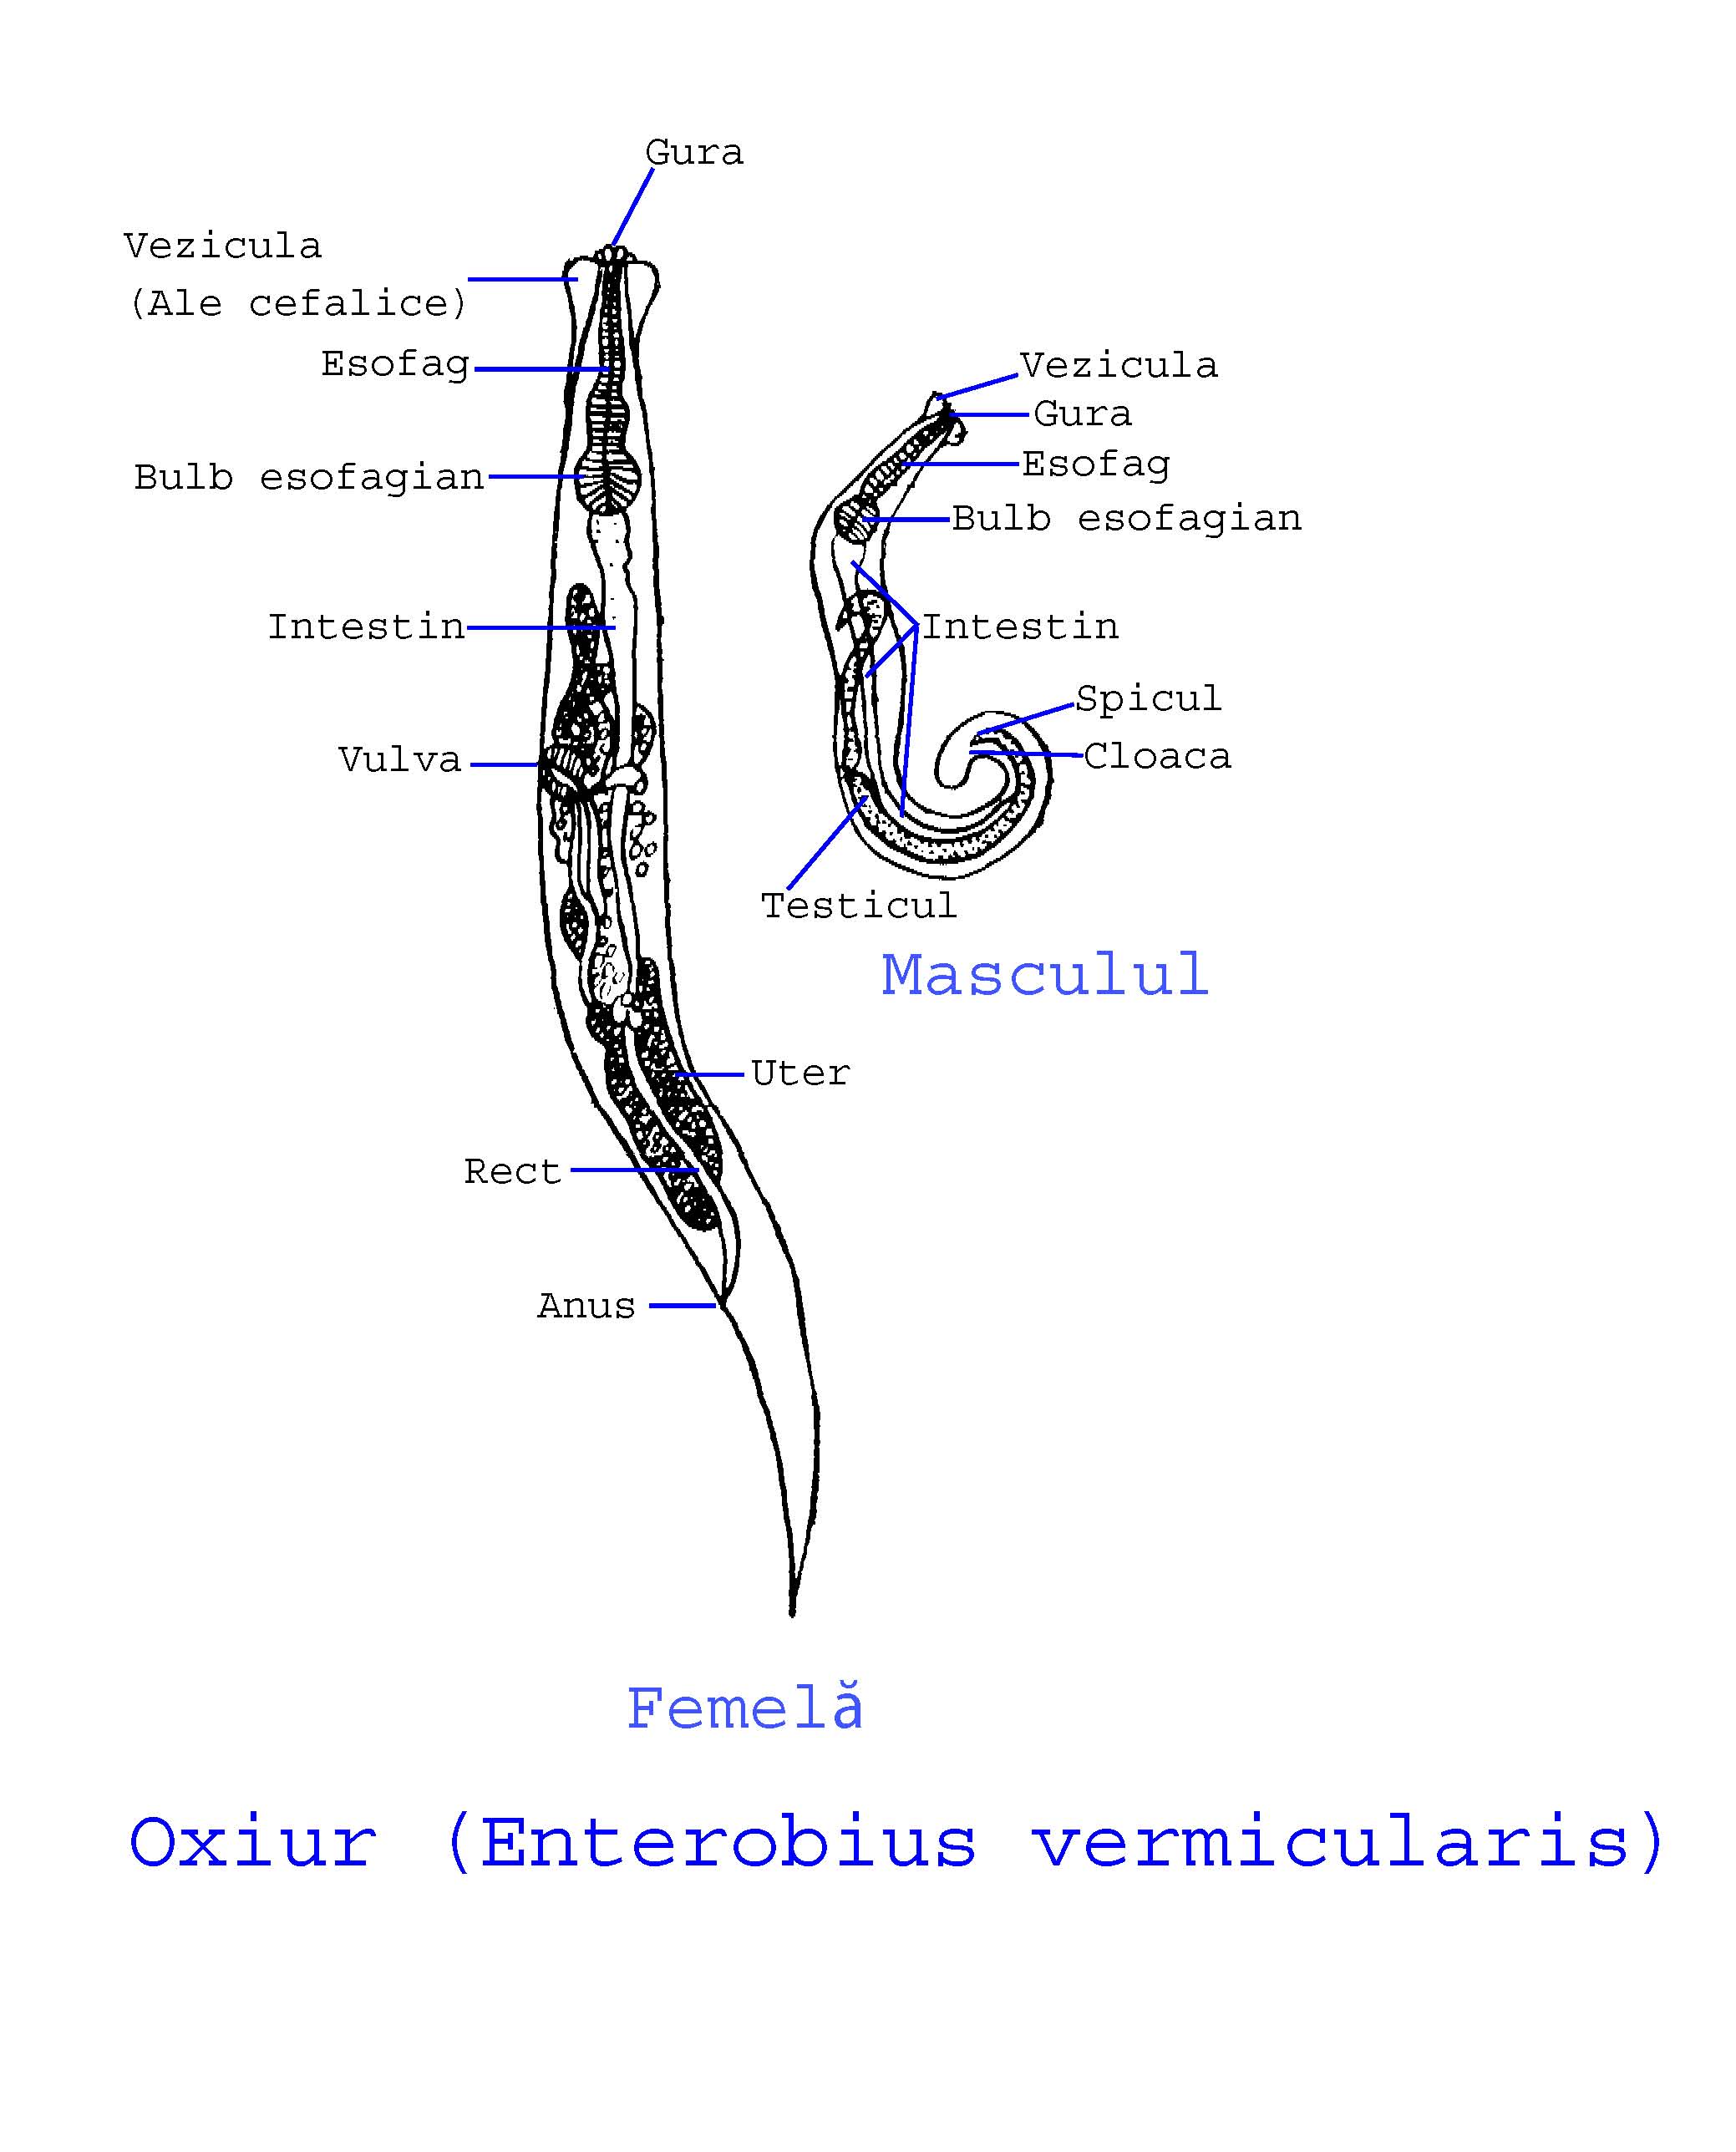 Enterobius vermicularis Enterobius vermicularis ou oxyure. Enterobius vermicularis - Wikipedia